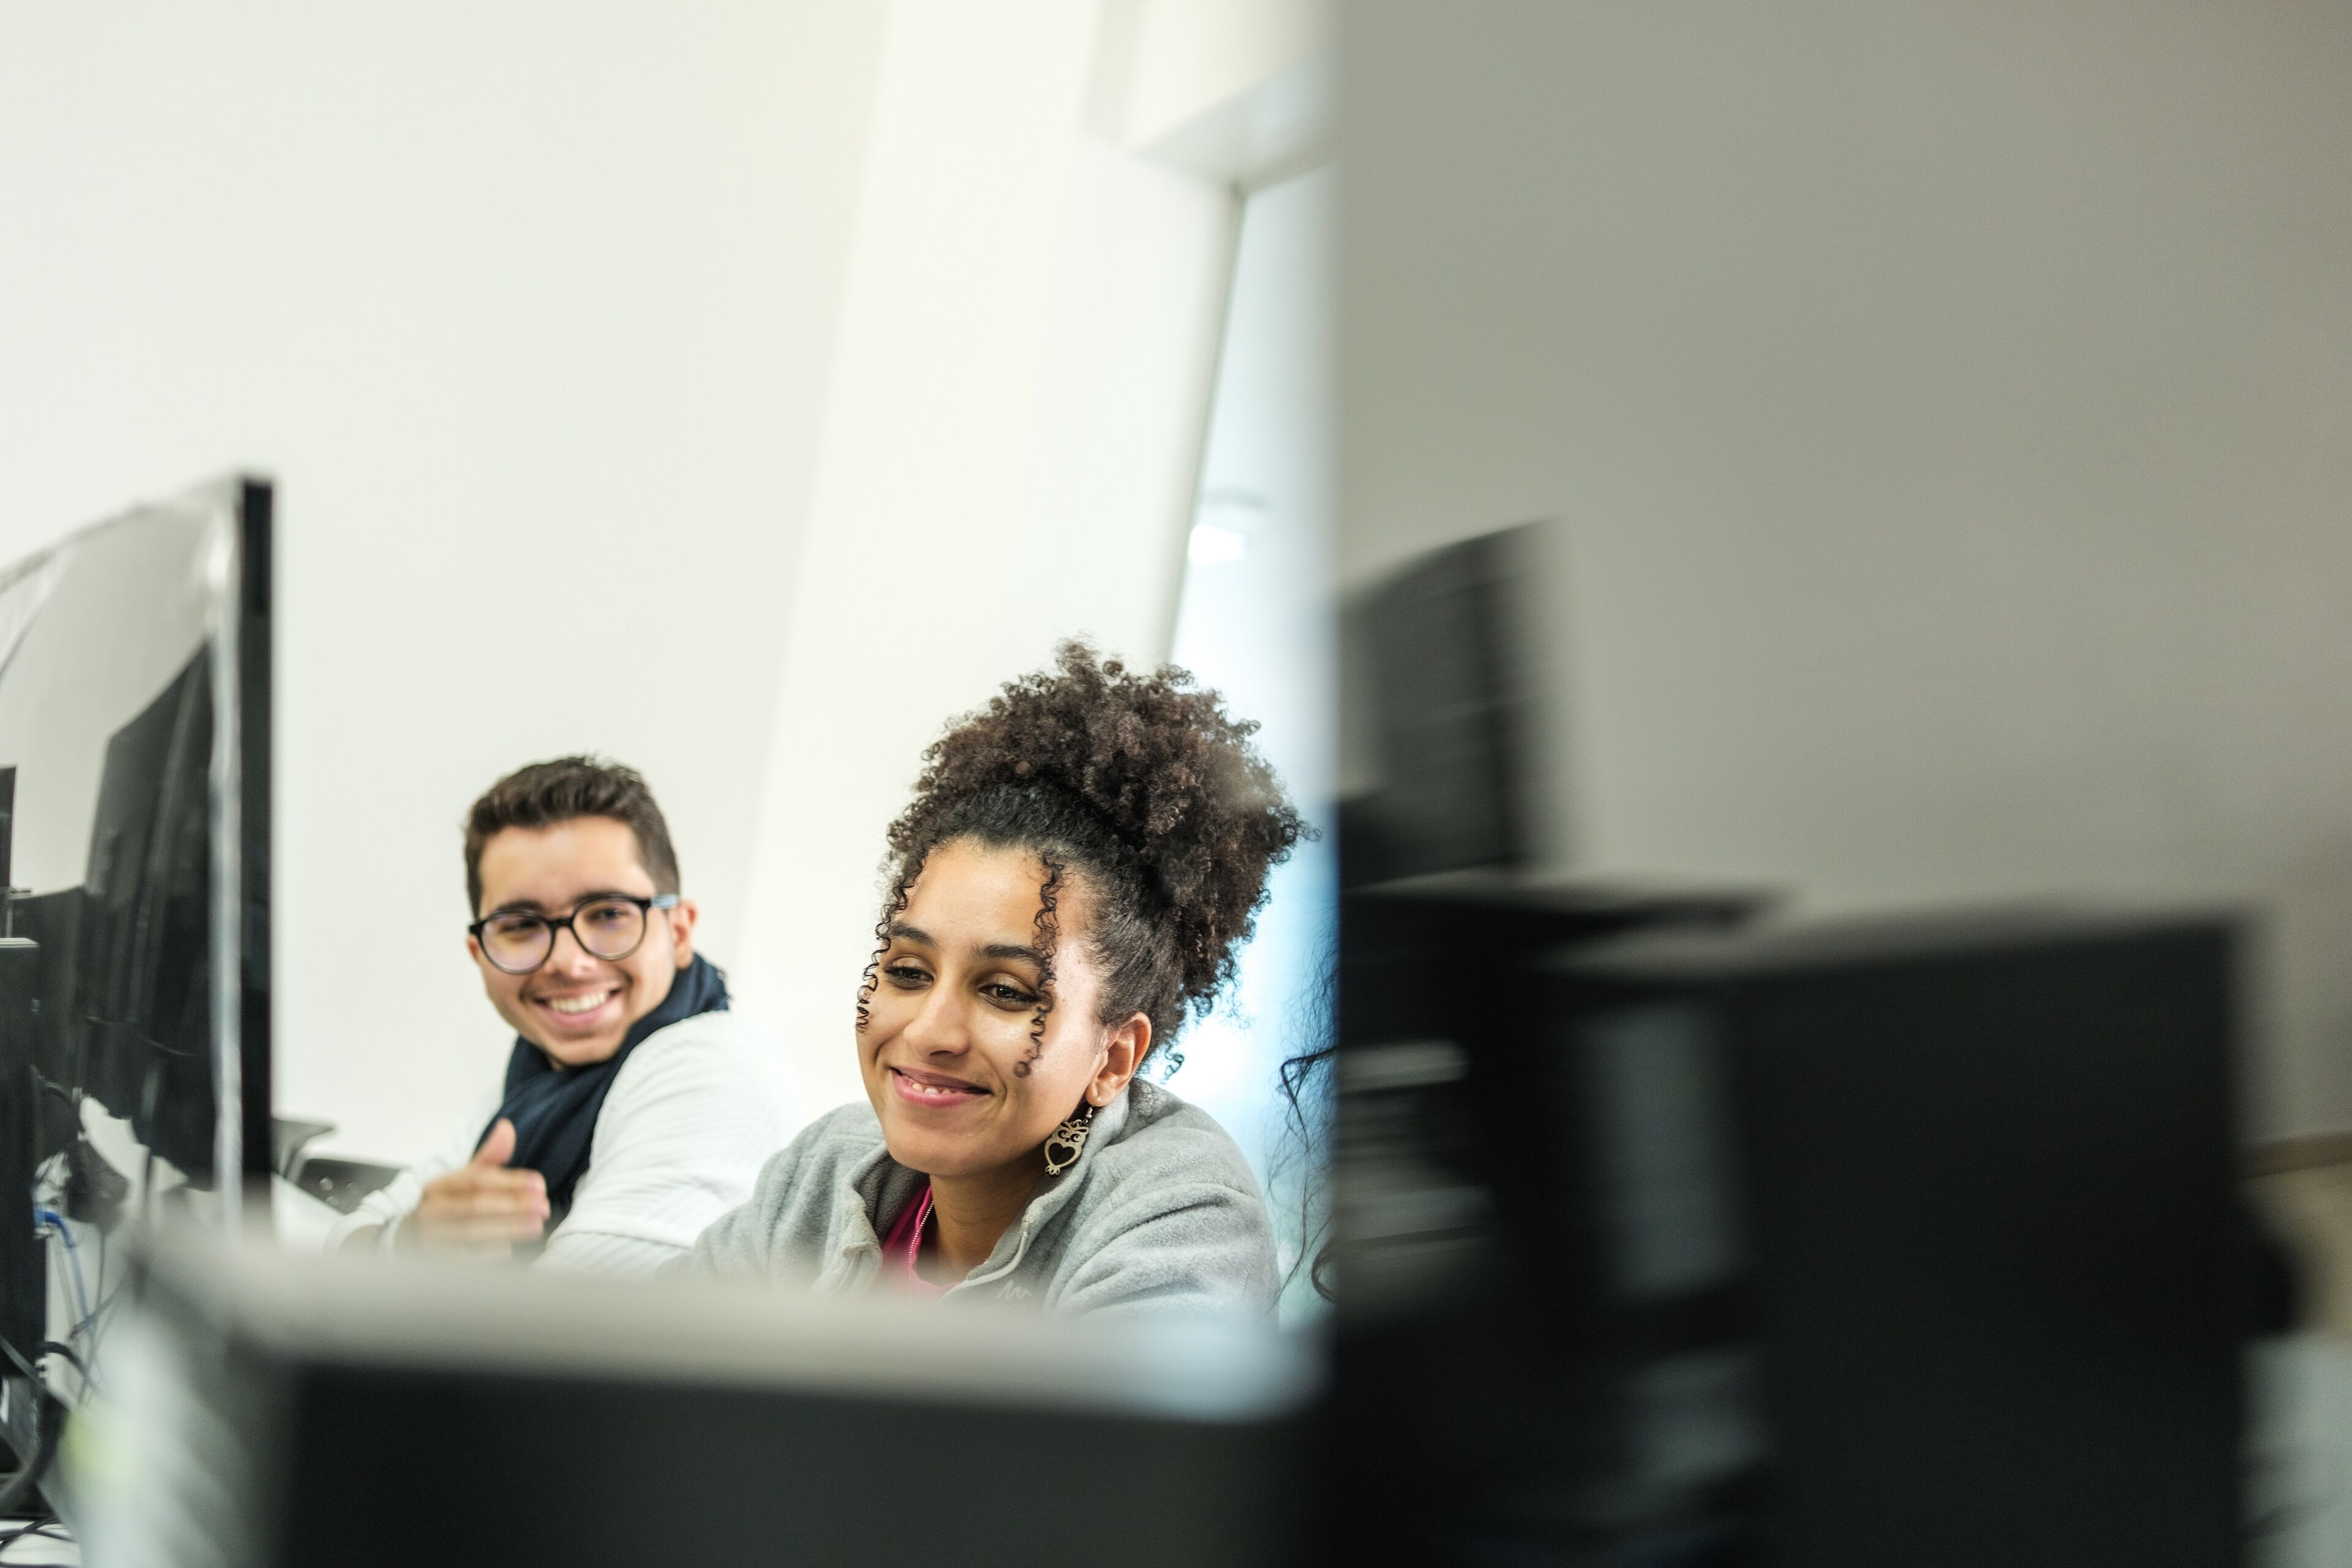 Des étudiants souriants travaillant sur des ordinateurs dans une salle de classe bien éclairée, démontrant l'intégration de la technologie dans l'éducation.